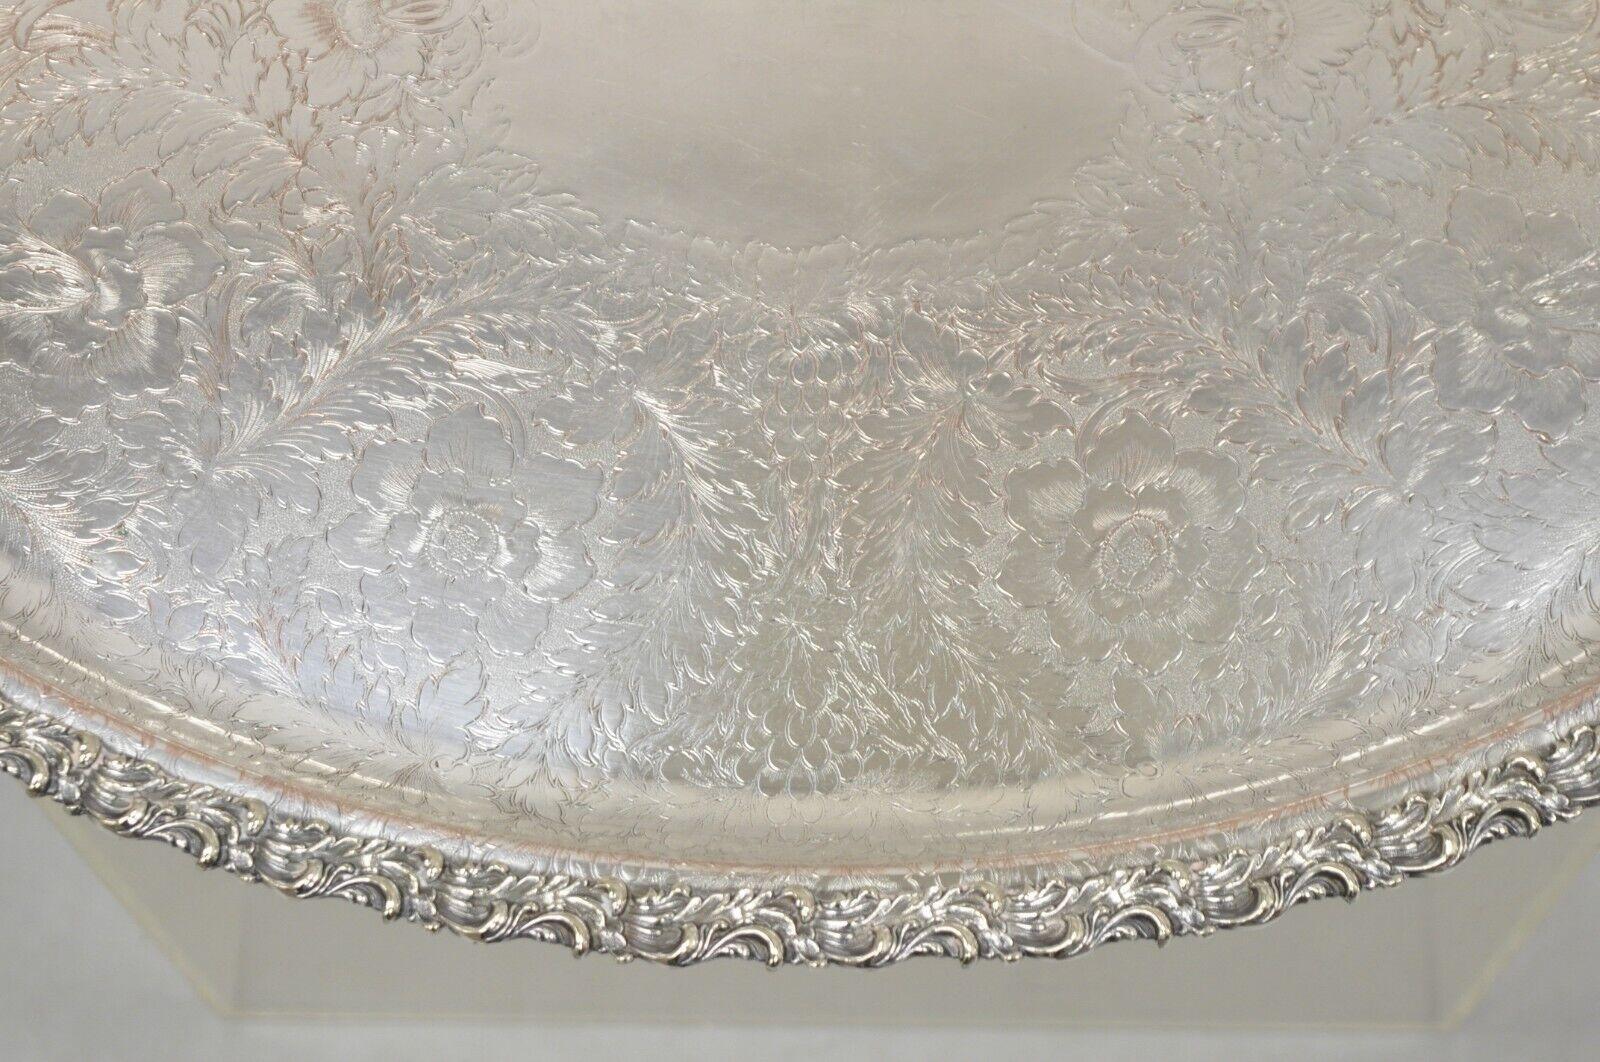 Antique English Victorian Art Nouveau Floral Repousse Oval Serving Platter Tray For Sale 2